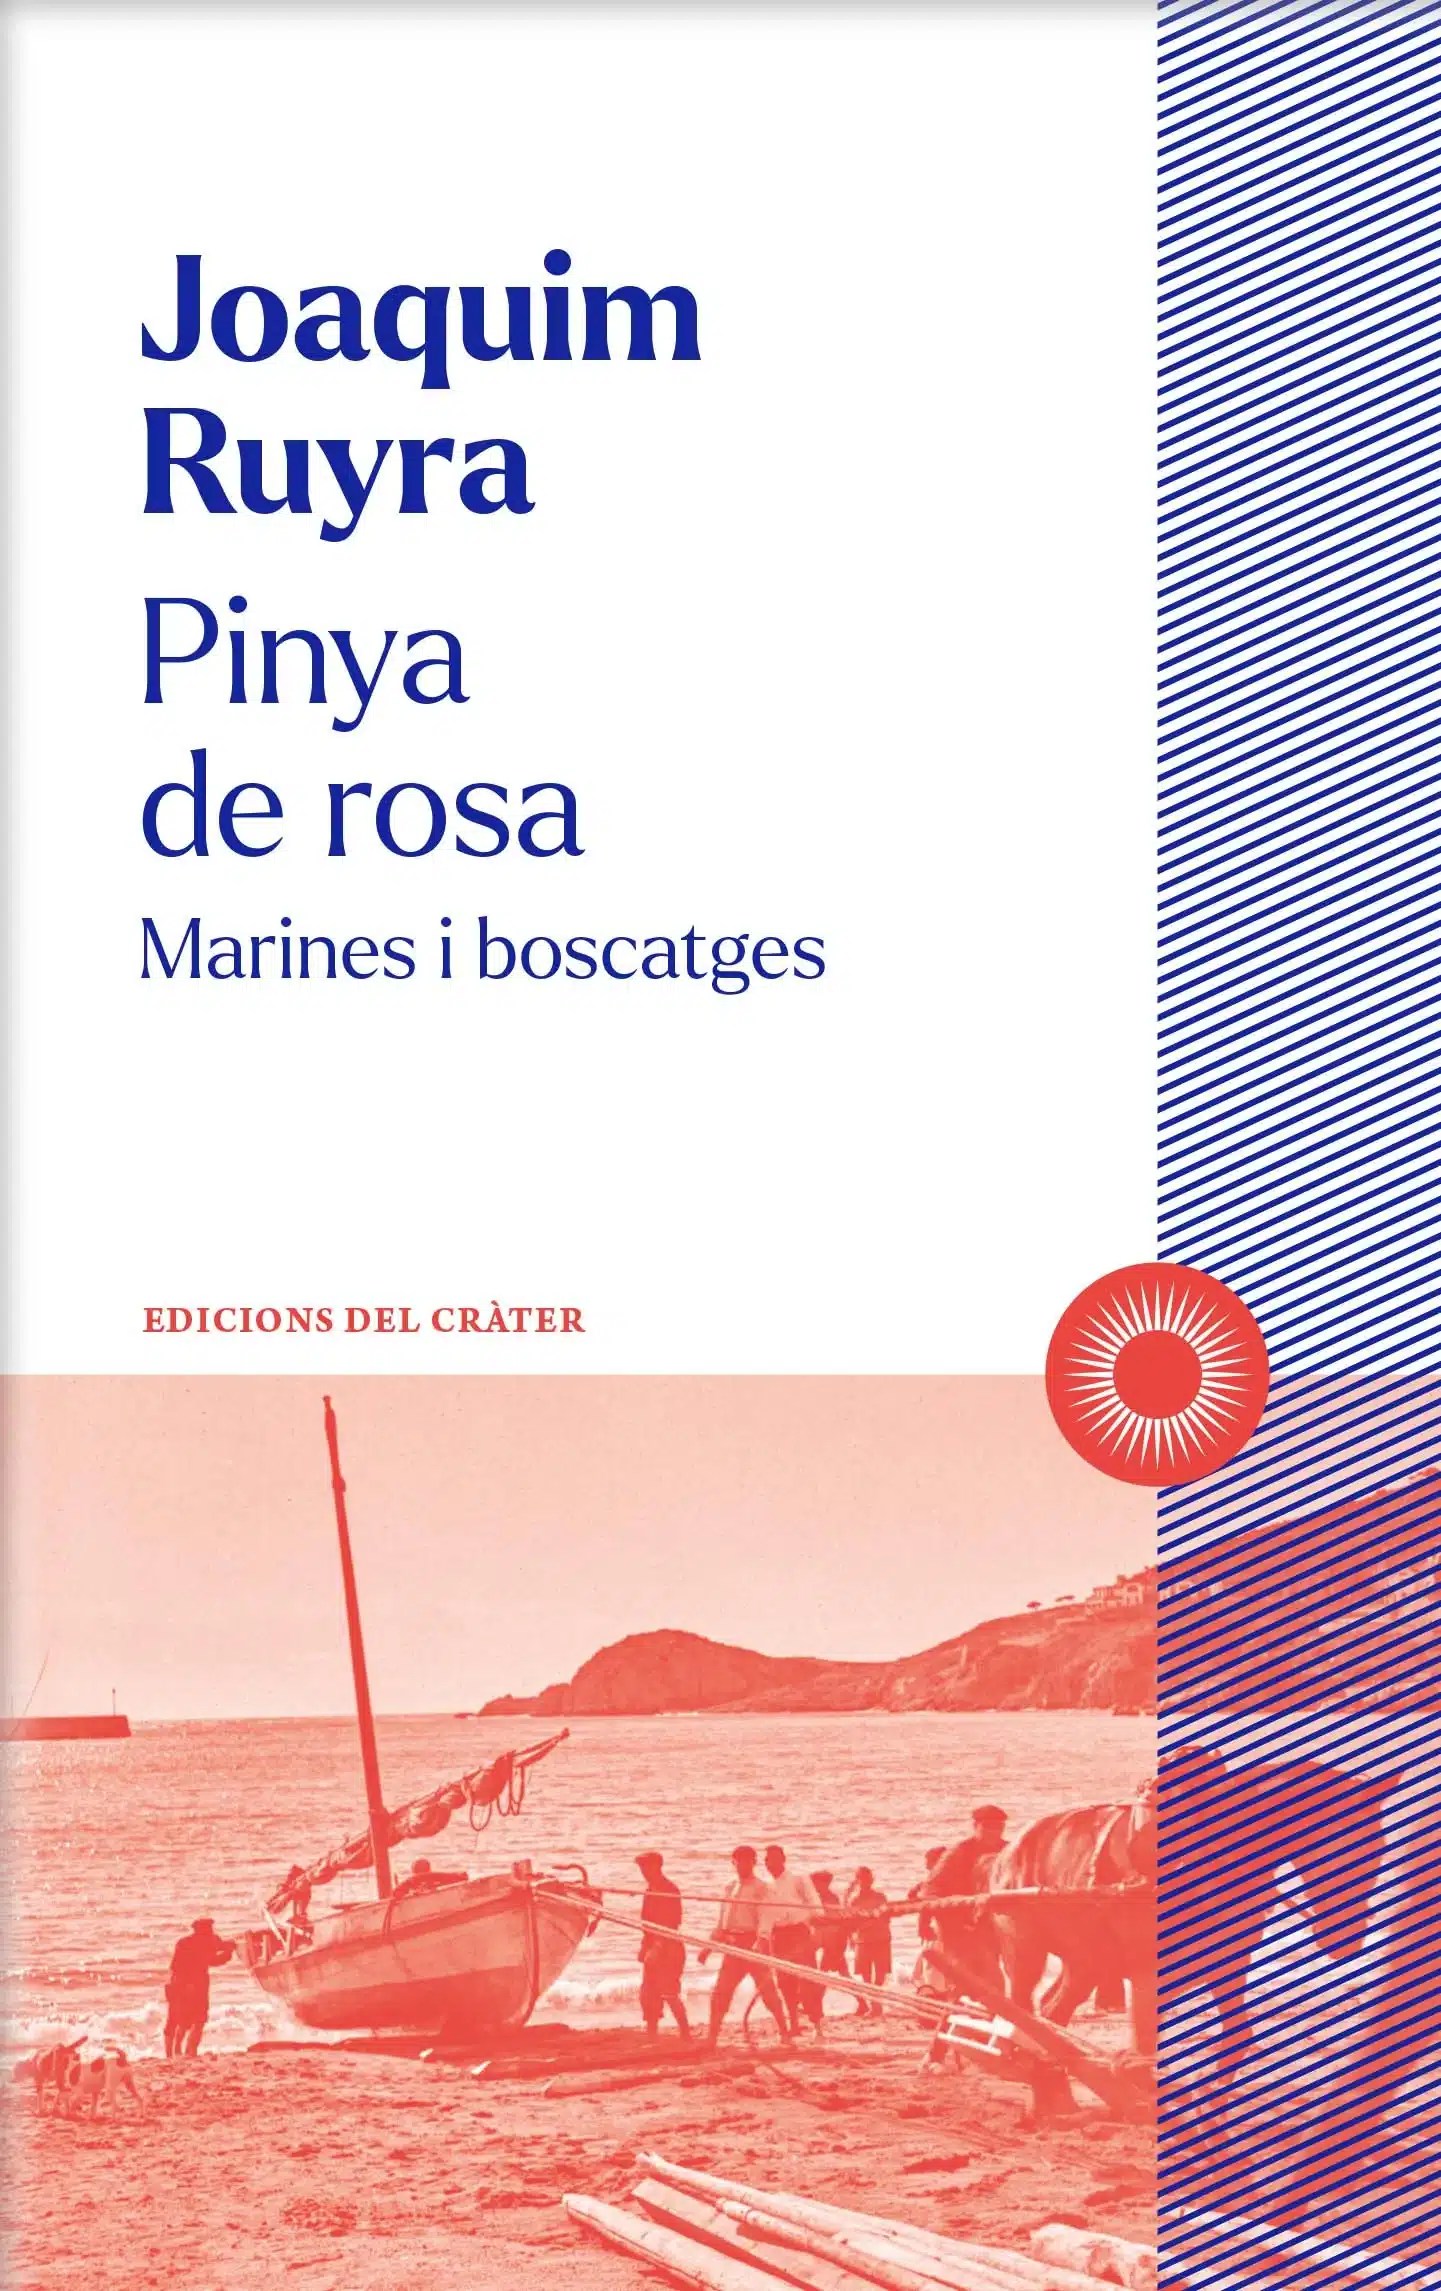 Joaquim Ruyra: Pinya de rosa (2024, Edicions del cràter)